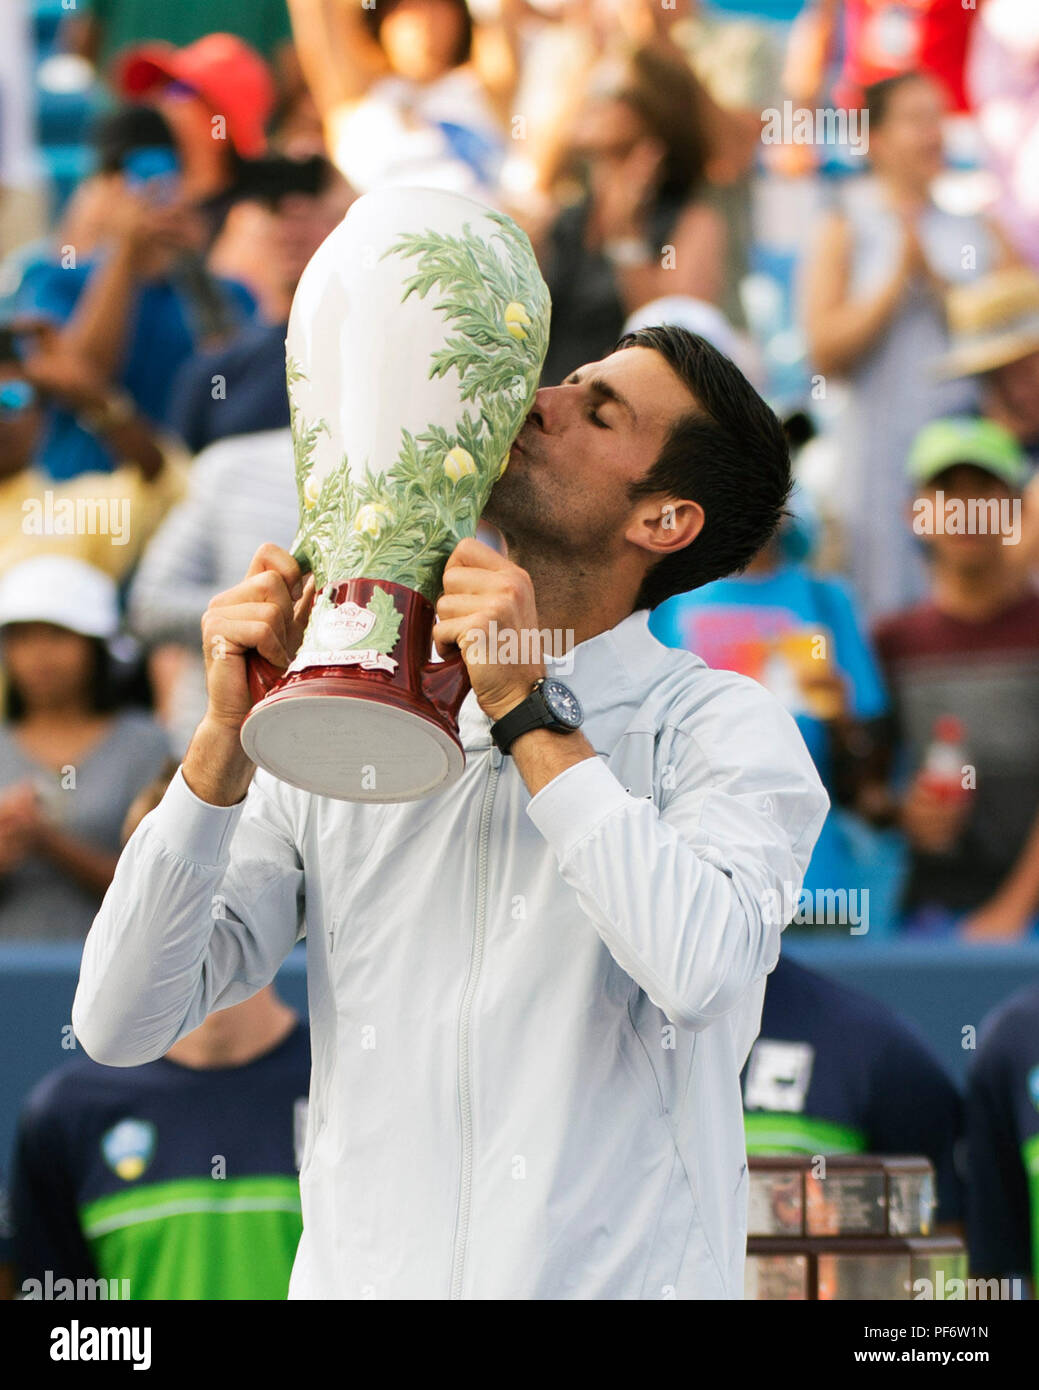 Mason, Ohio, USA. August 19, 2018: Novak Djokovic küsst den Rookwood Trophäe am Western Southern öffnen, Mason, Ohio, USA. Brent Clark/Alamy leben Nachrichten Stockfoto